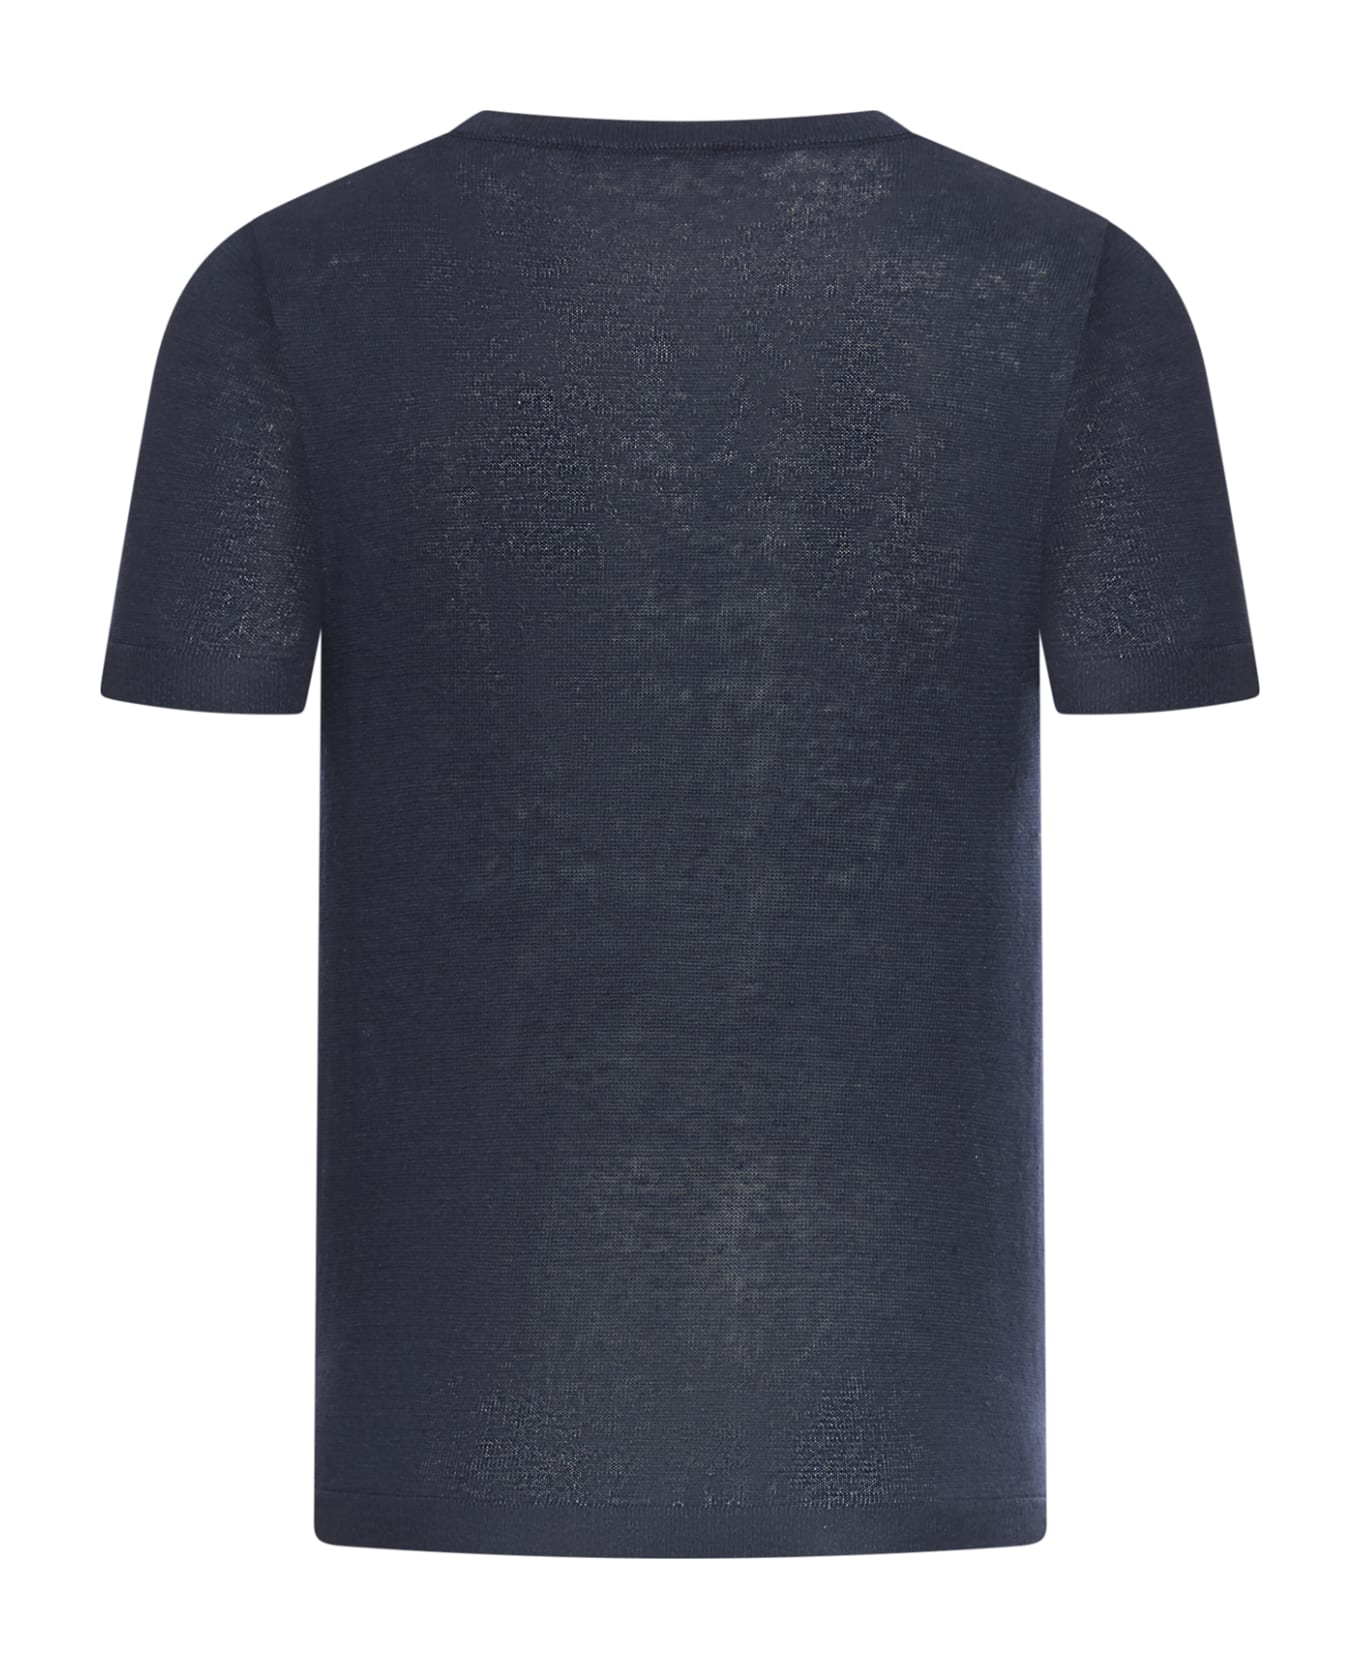 'S Max Mara Novara Sweater - Blue Marino Tシャツ